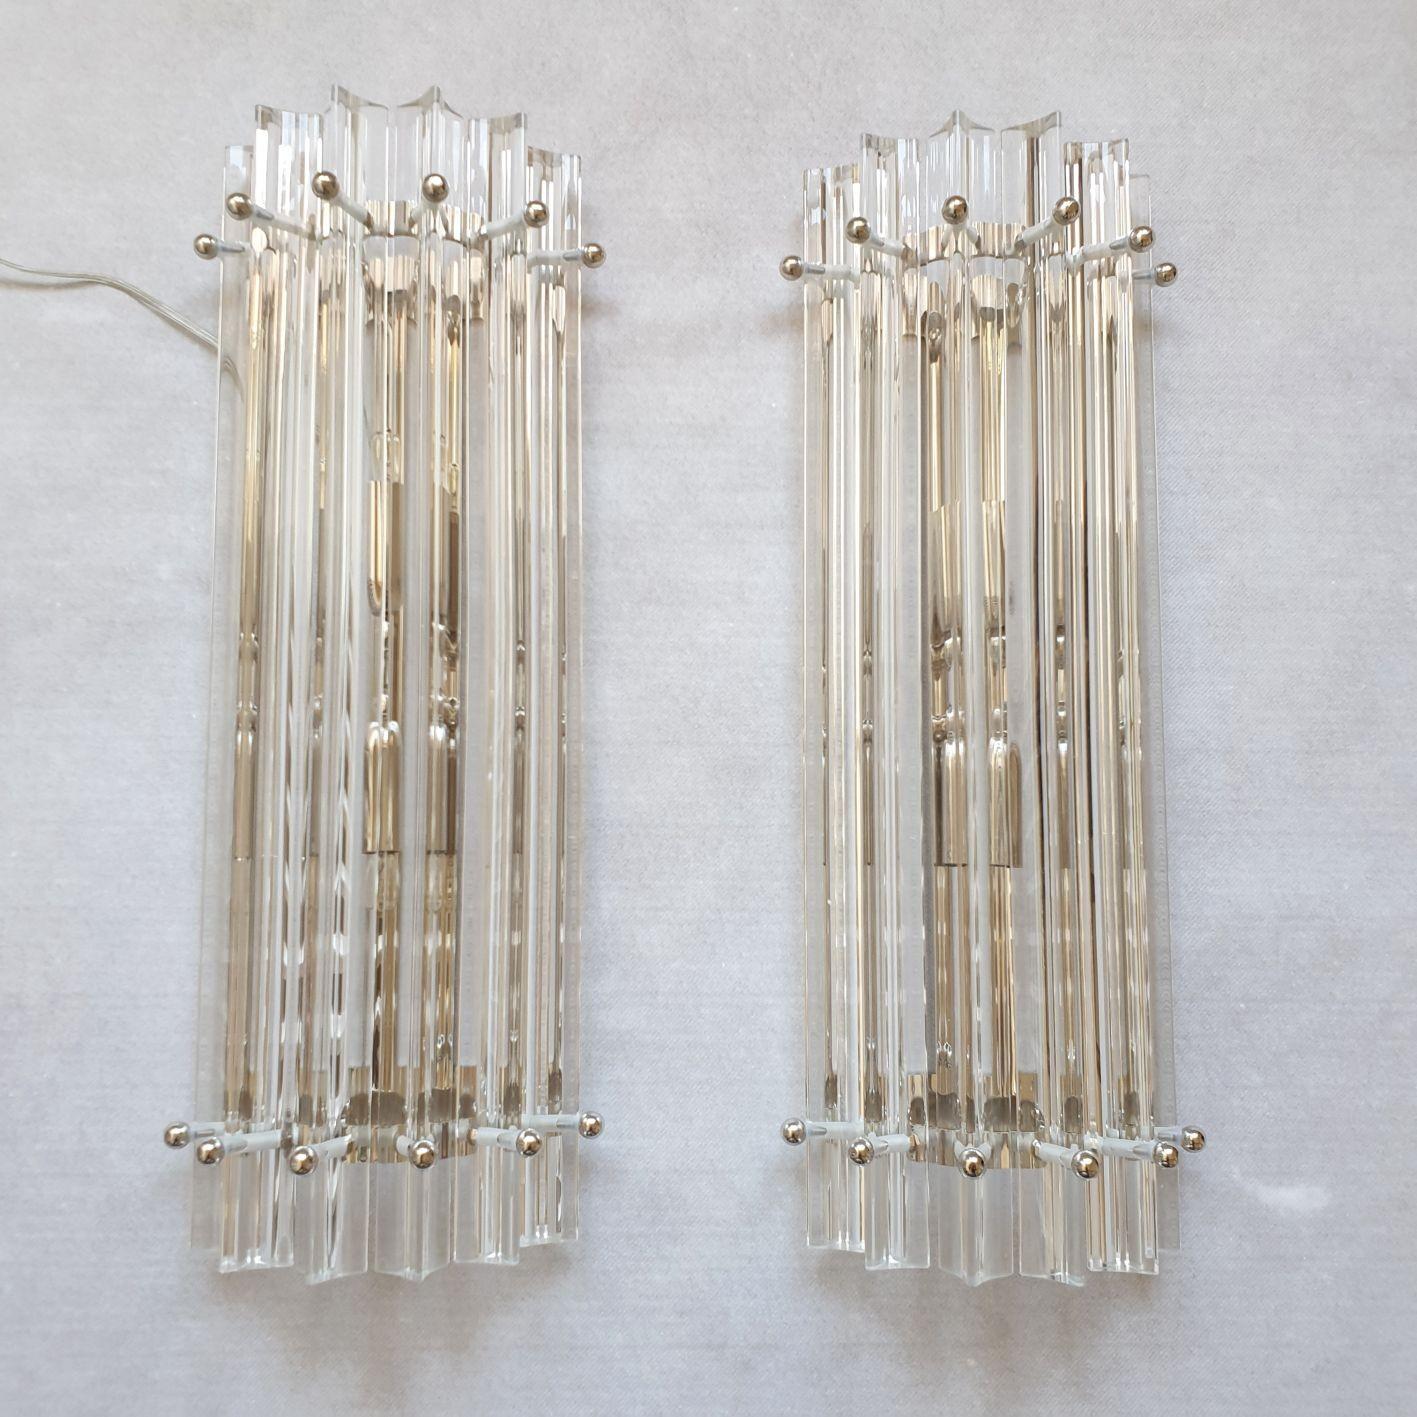 Paar Wandleuchten aus Murano-Glas von Triedri, Venini, Italien, 1980er Jahre, Mitte des Jahrhunderts.
Satz von vier Paaren oder acht Leuchtern erhältlich.
Verkauft und bepreist pro Paar.
Die Vintage-Wandleuchter haben verchromte Halterungen.
Jeweils